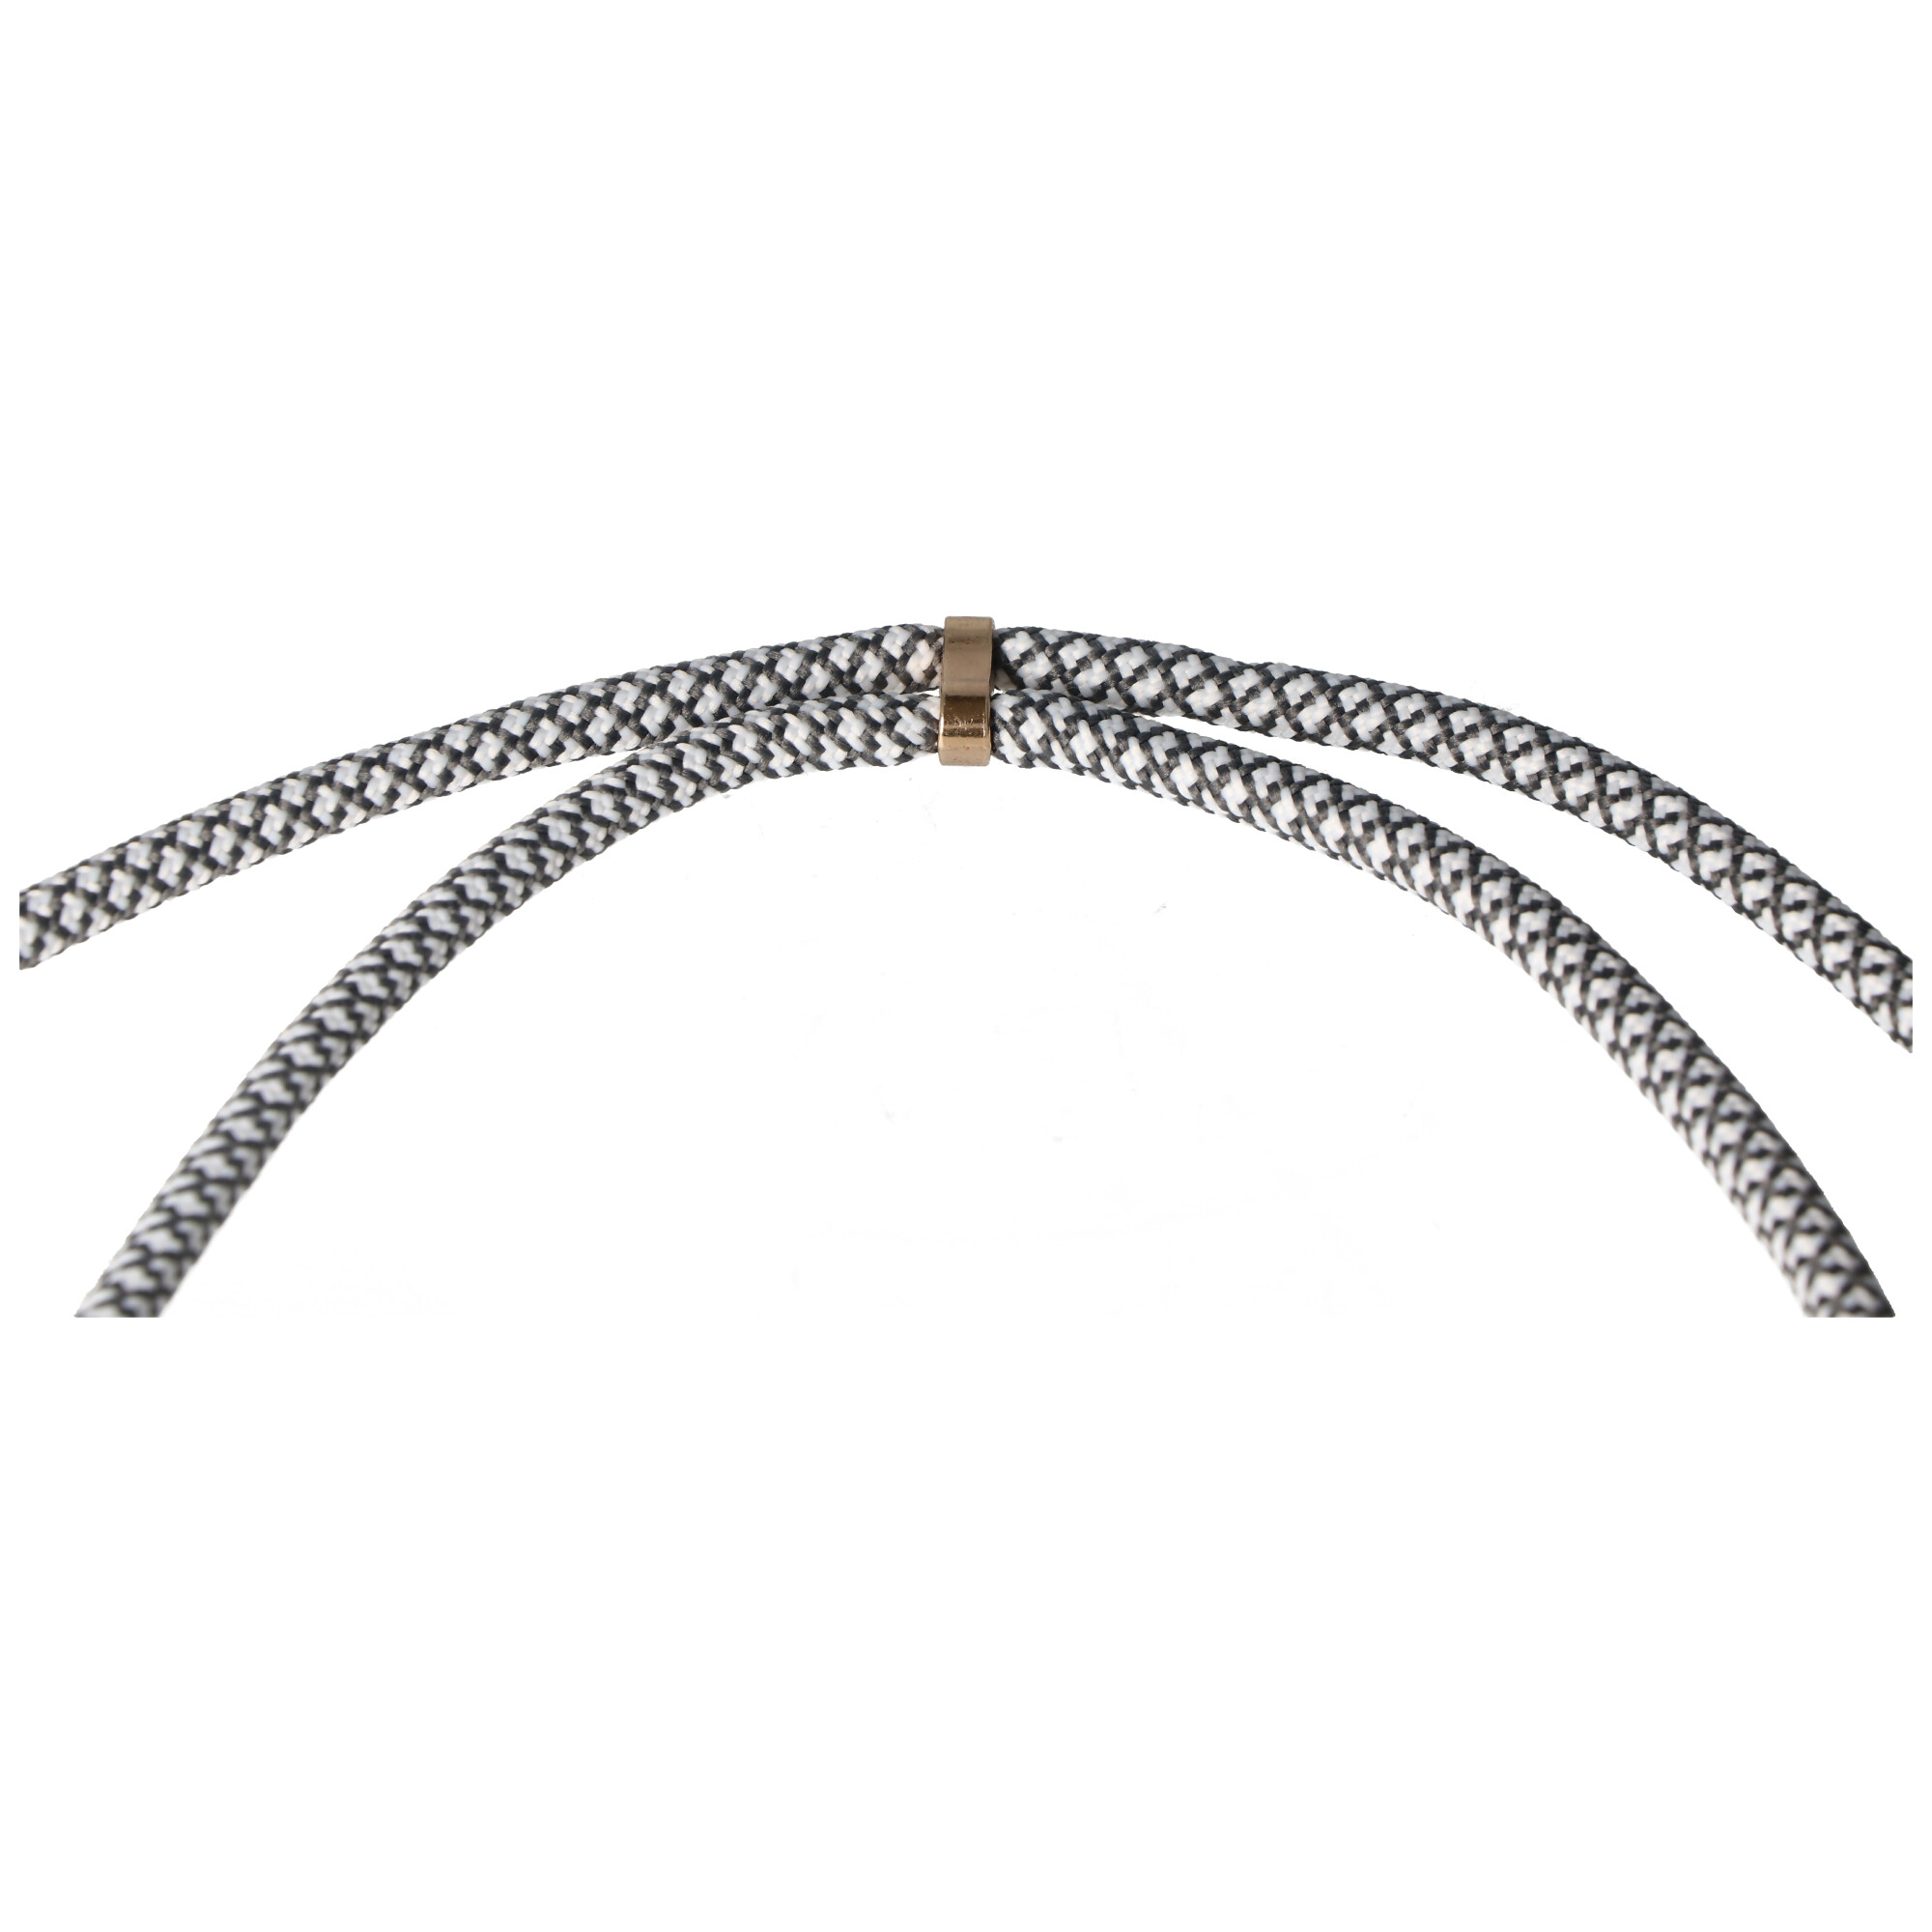 Necklace Case passend für Apple iPhone 11 PRO, Smartphonehülle mit Kordel grau,weiß zum Umhängen